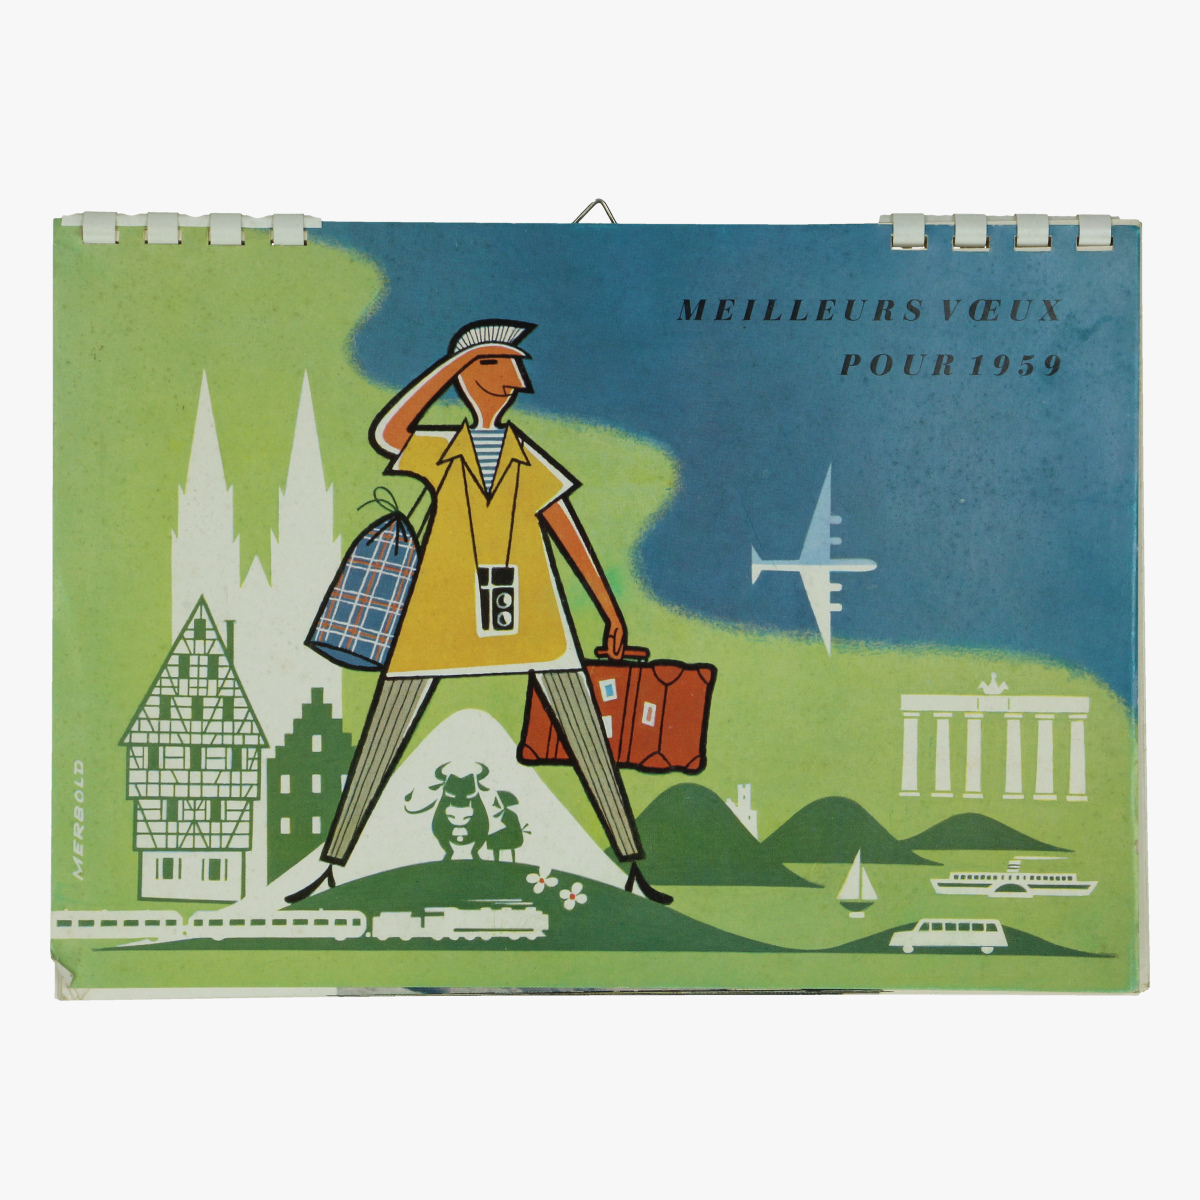 Afbeeldingen van meilleurs voeux pour 1959 - tourisme kalender - postkaarten